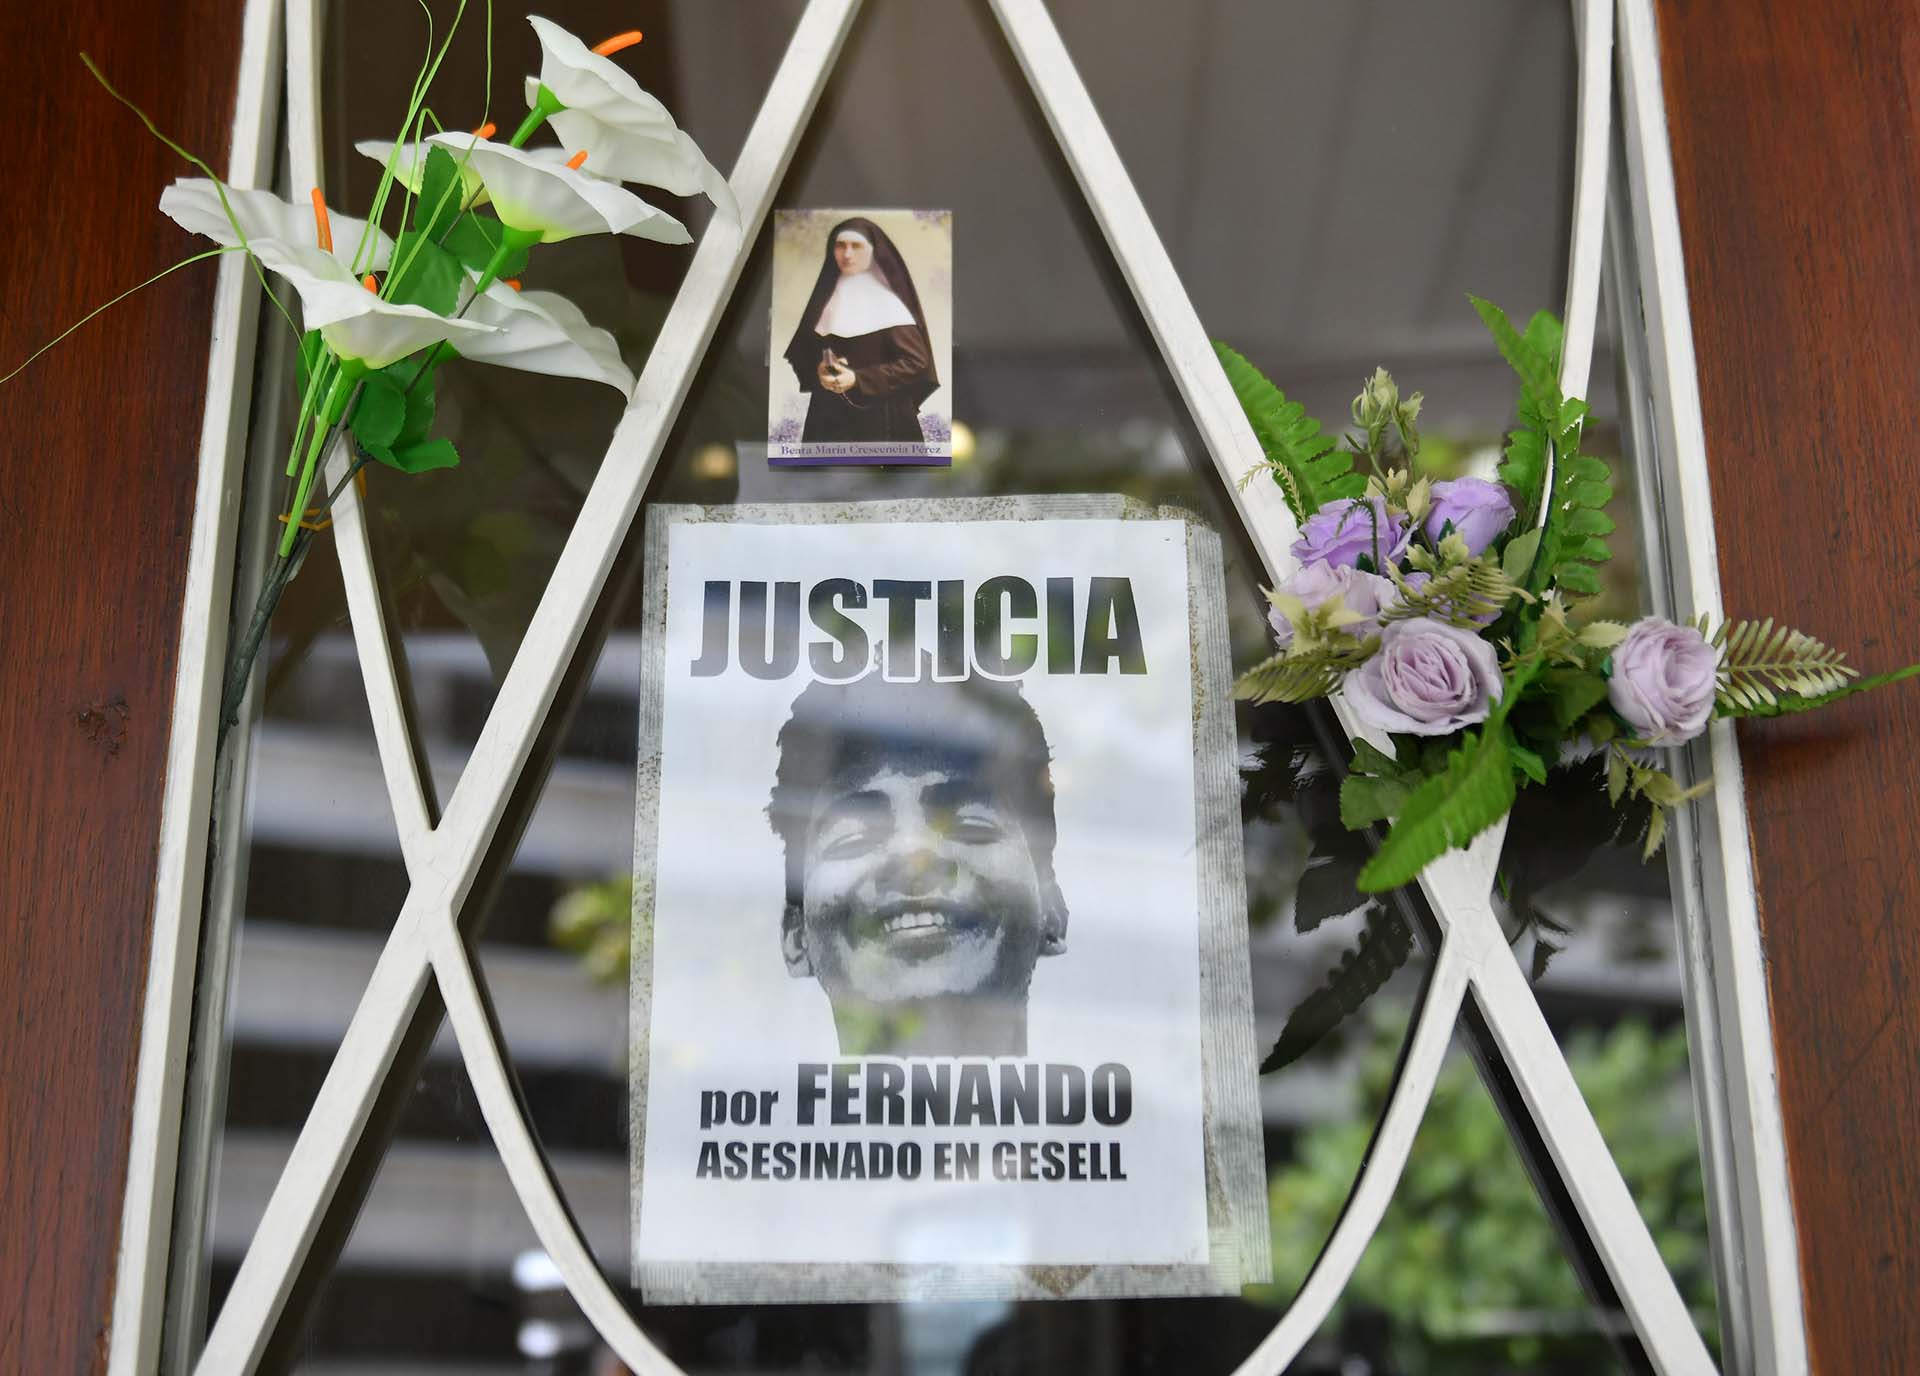 Abogados penalistas apoyaron el fallo que condenó a los asesinos de Fernando Báez Sosa